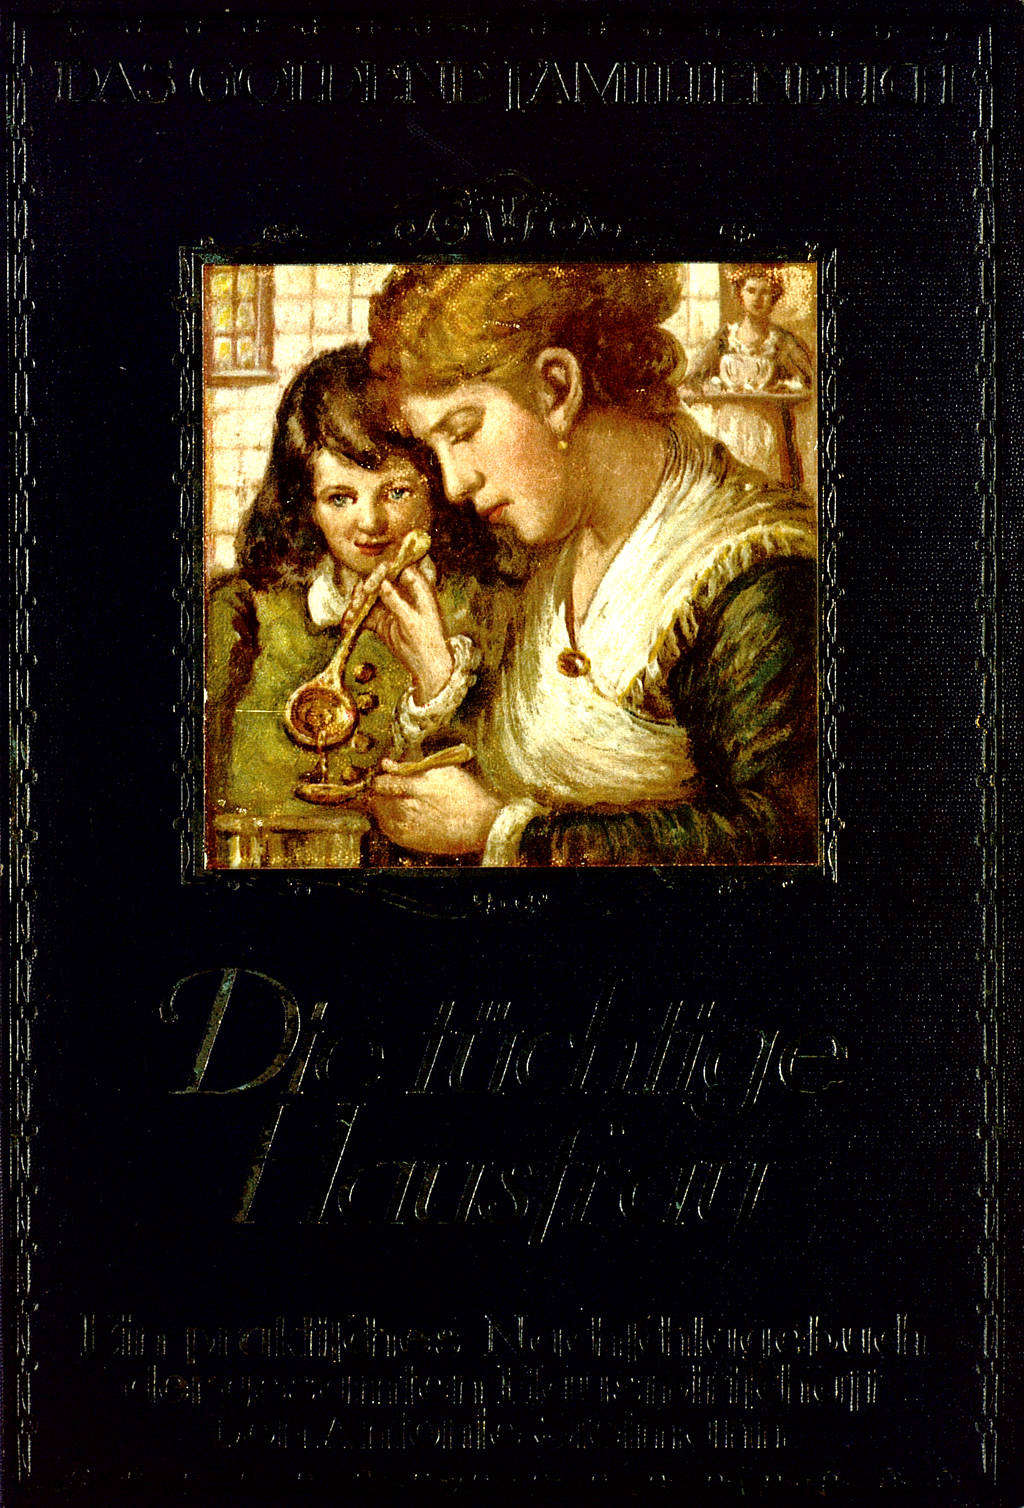 Buchcover von Antonie Steimann's "Die tüchtige Hausfrau"